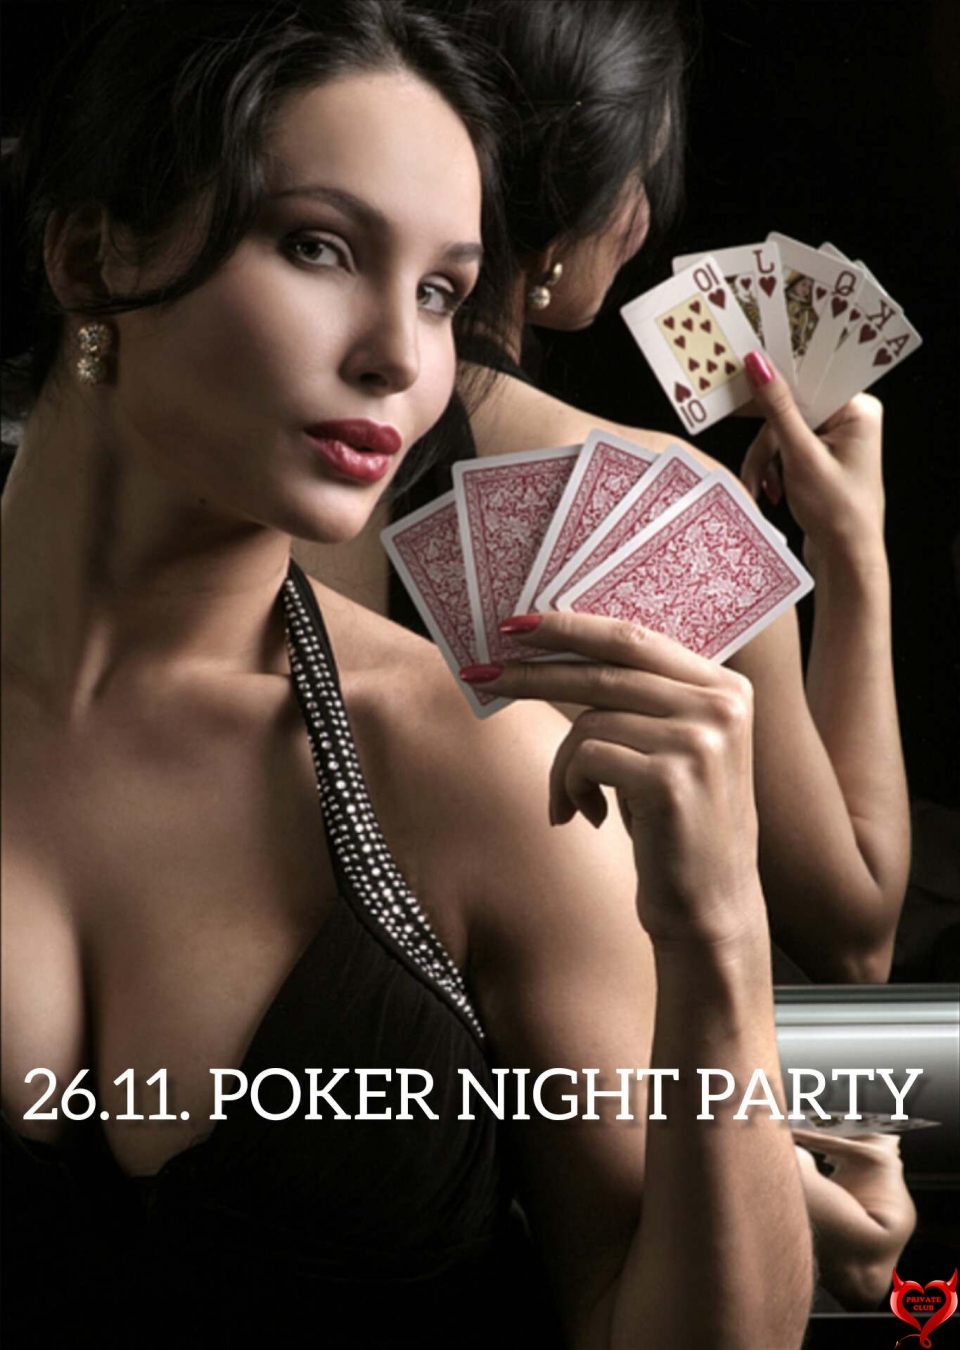 Покер – одна из самых популярных карточных игр. Любителям покера представится уникальный шанс получить двойное удовольствие от игры и выигрыша! Победитель или победительница получит в качестве выигрыша пару, которая будет готова выполнить самые дерзкие пожелания в этот вечер. Любителям острых ощущений можно будет поставить на кон свою пару для игры. Правила игры могут меняться по желанию.Этот вечер будет незабываемым для всех!